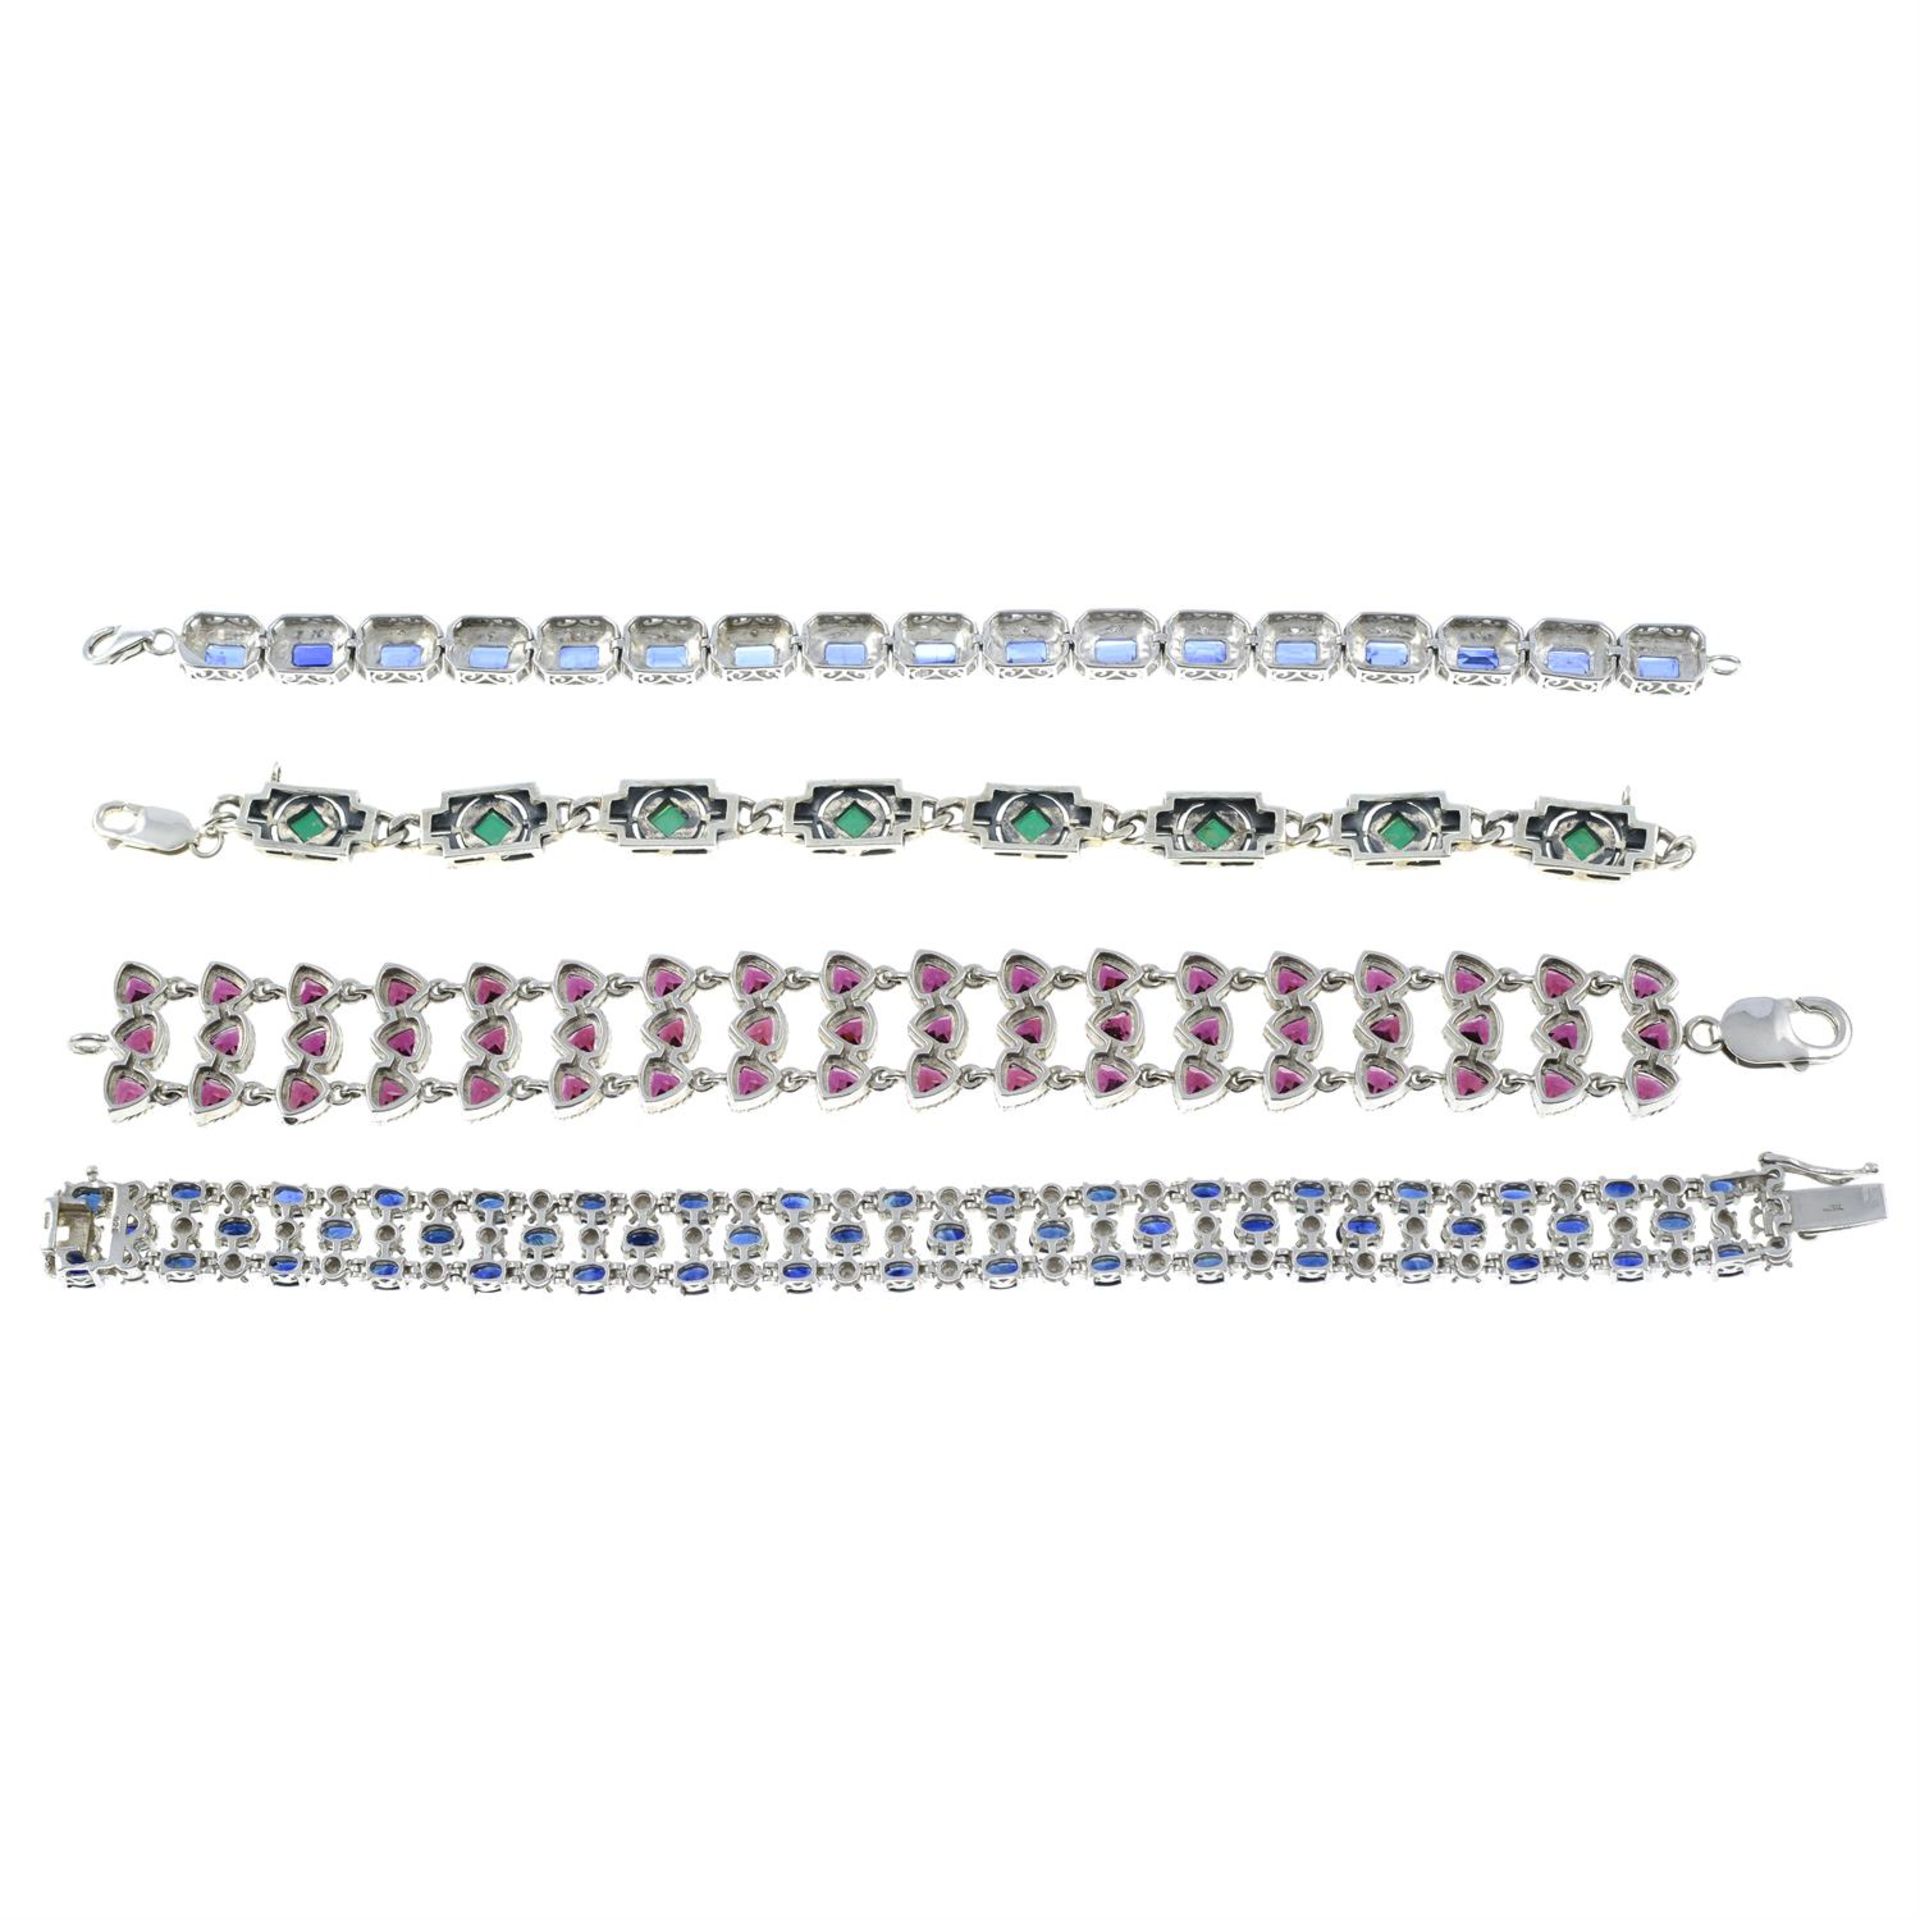 Four gem-set bracelets. - Image 2 of 2